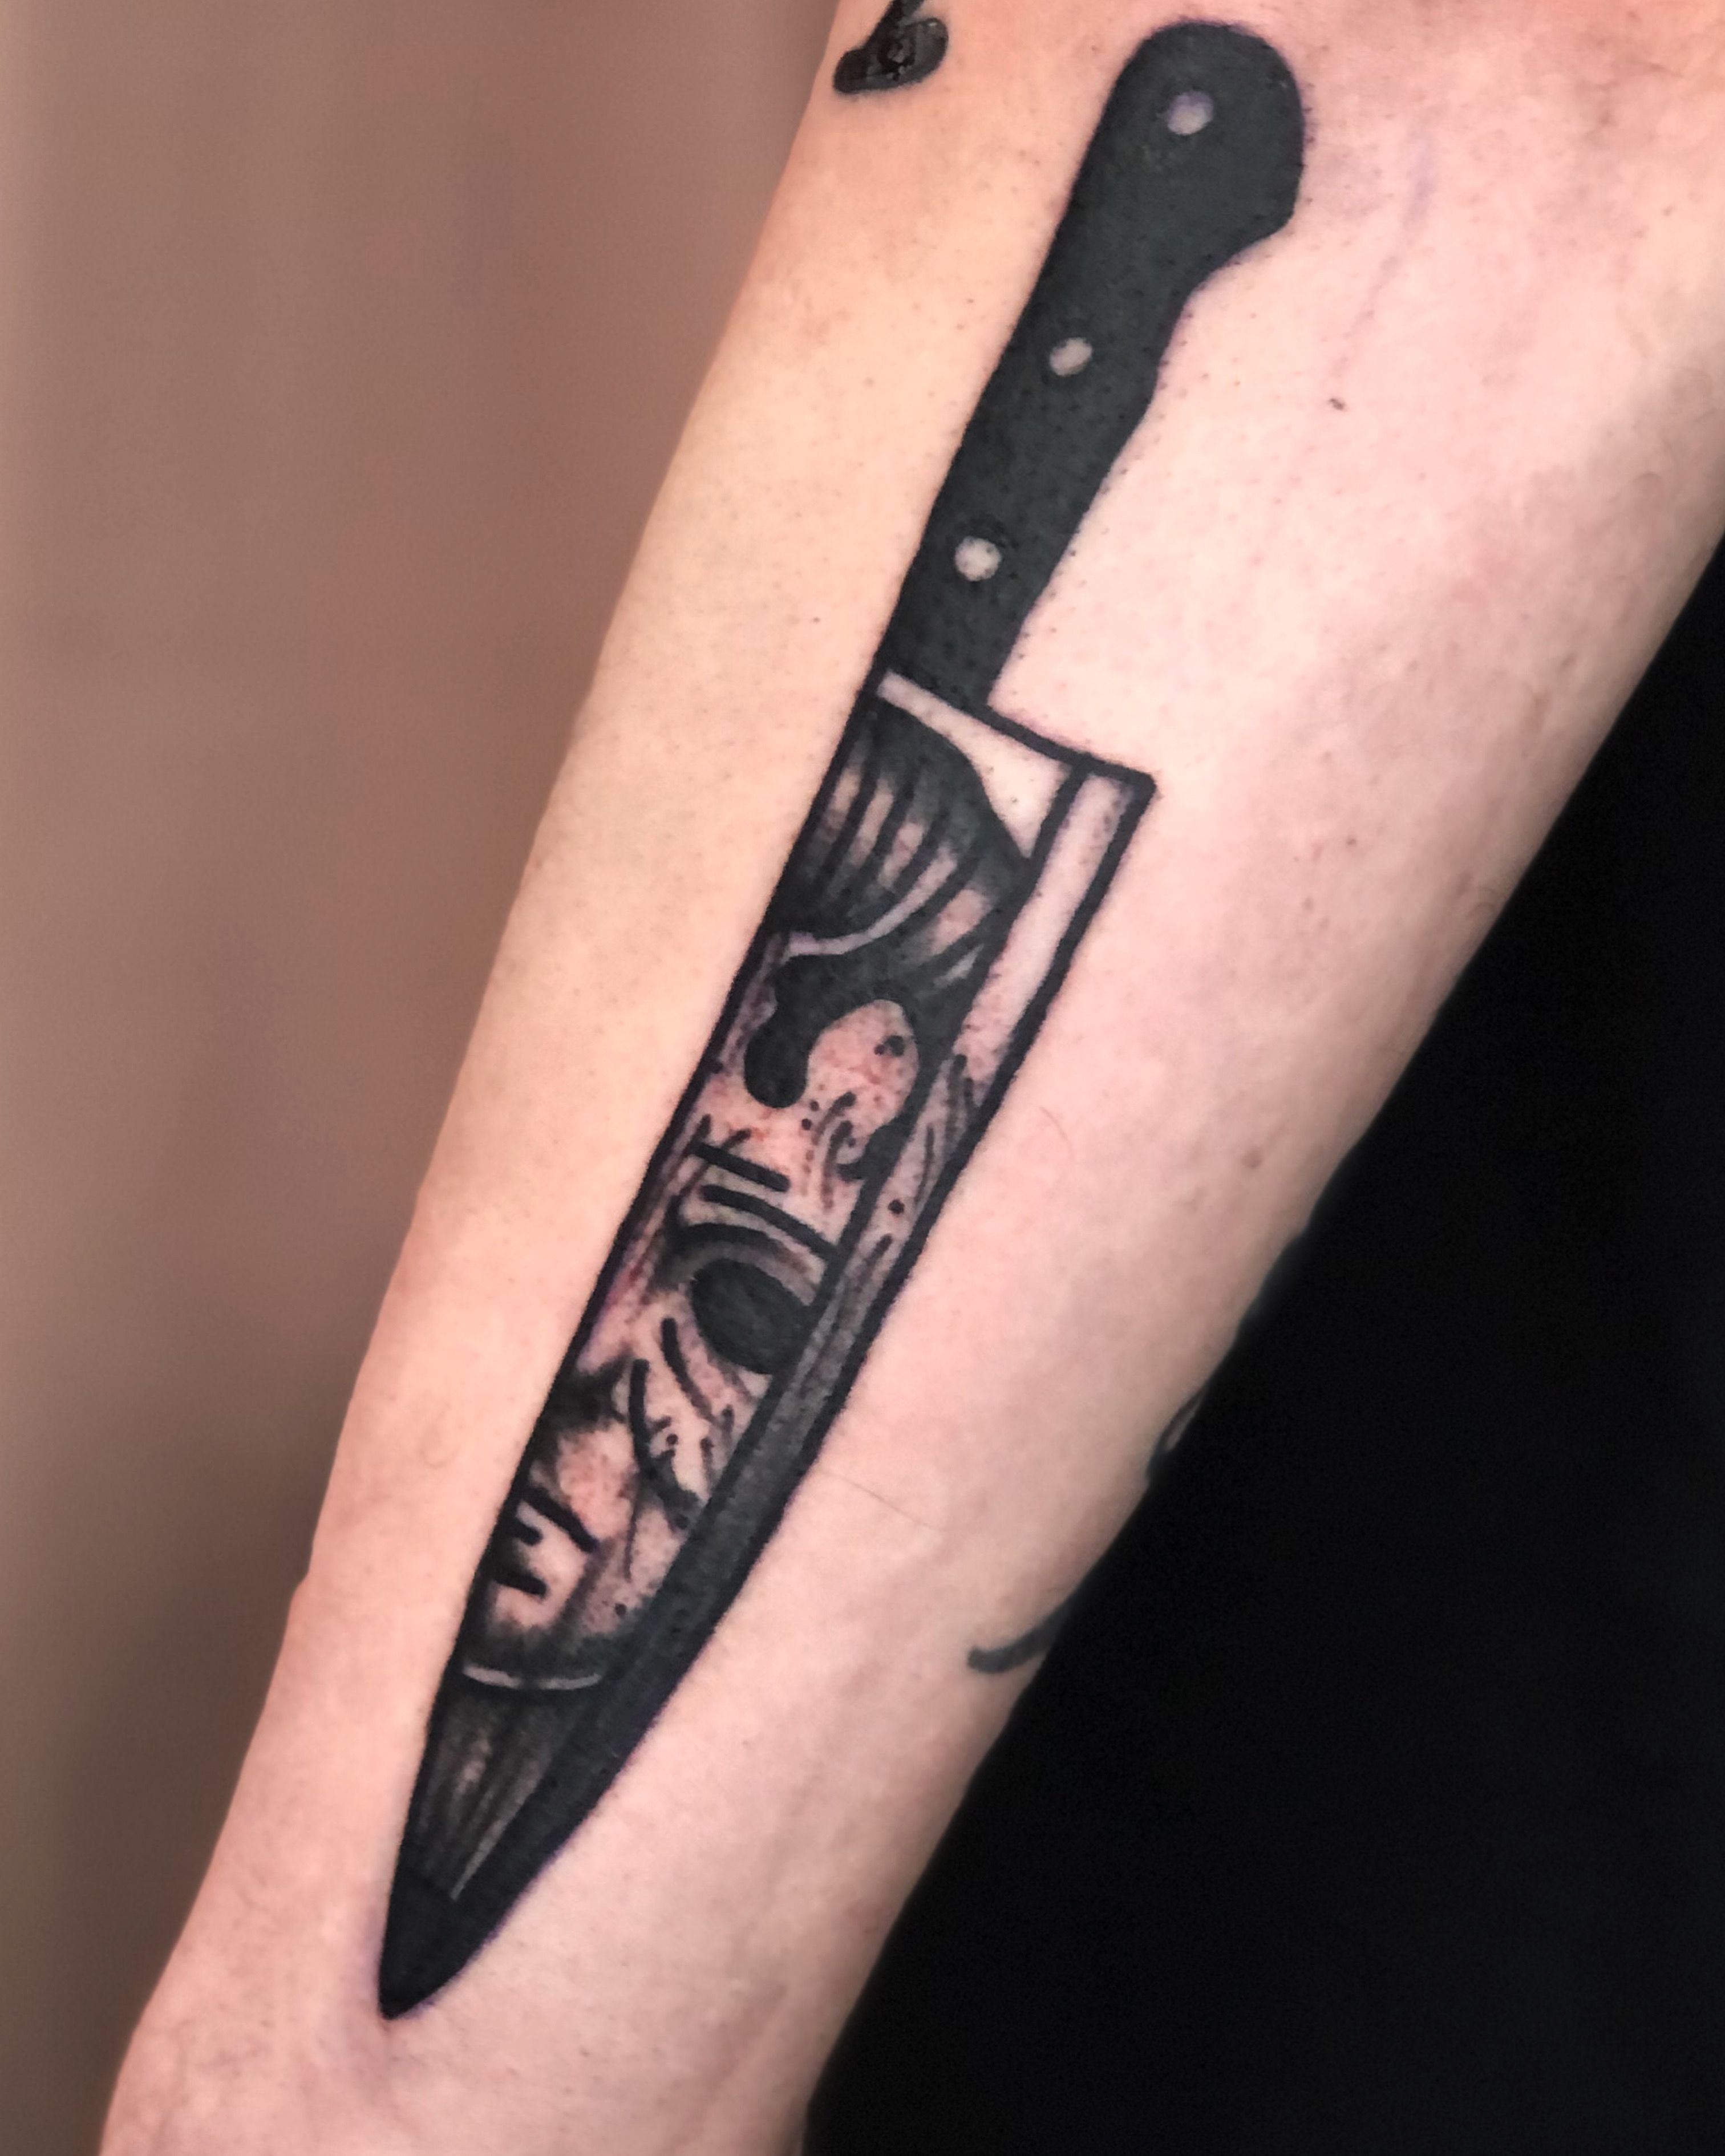 Knife tattoo idea | TattoosAI